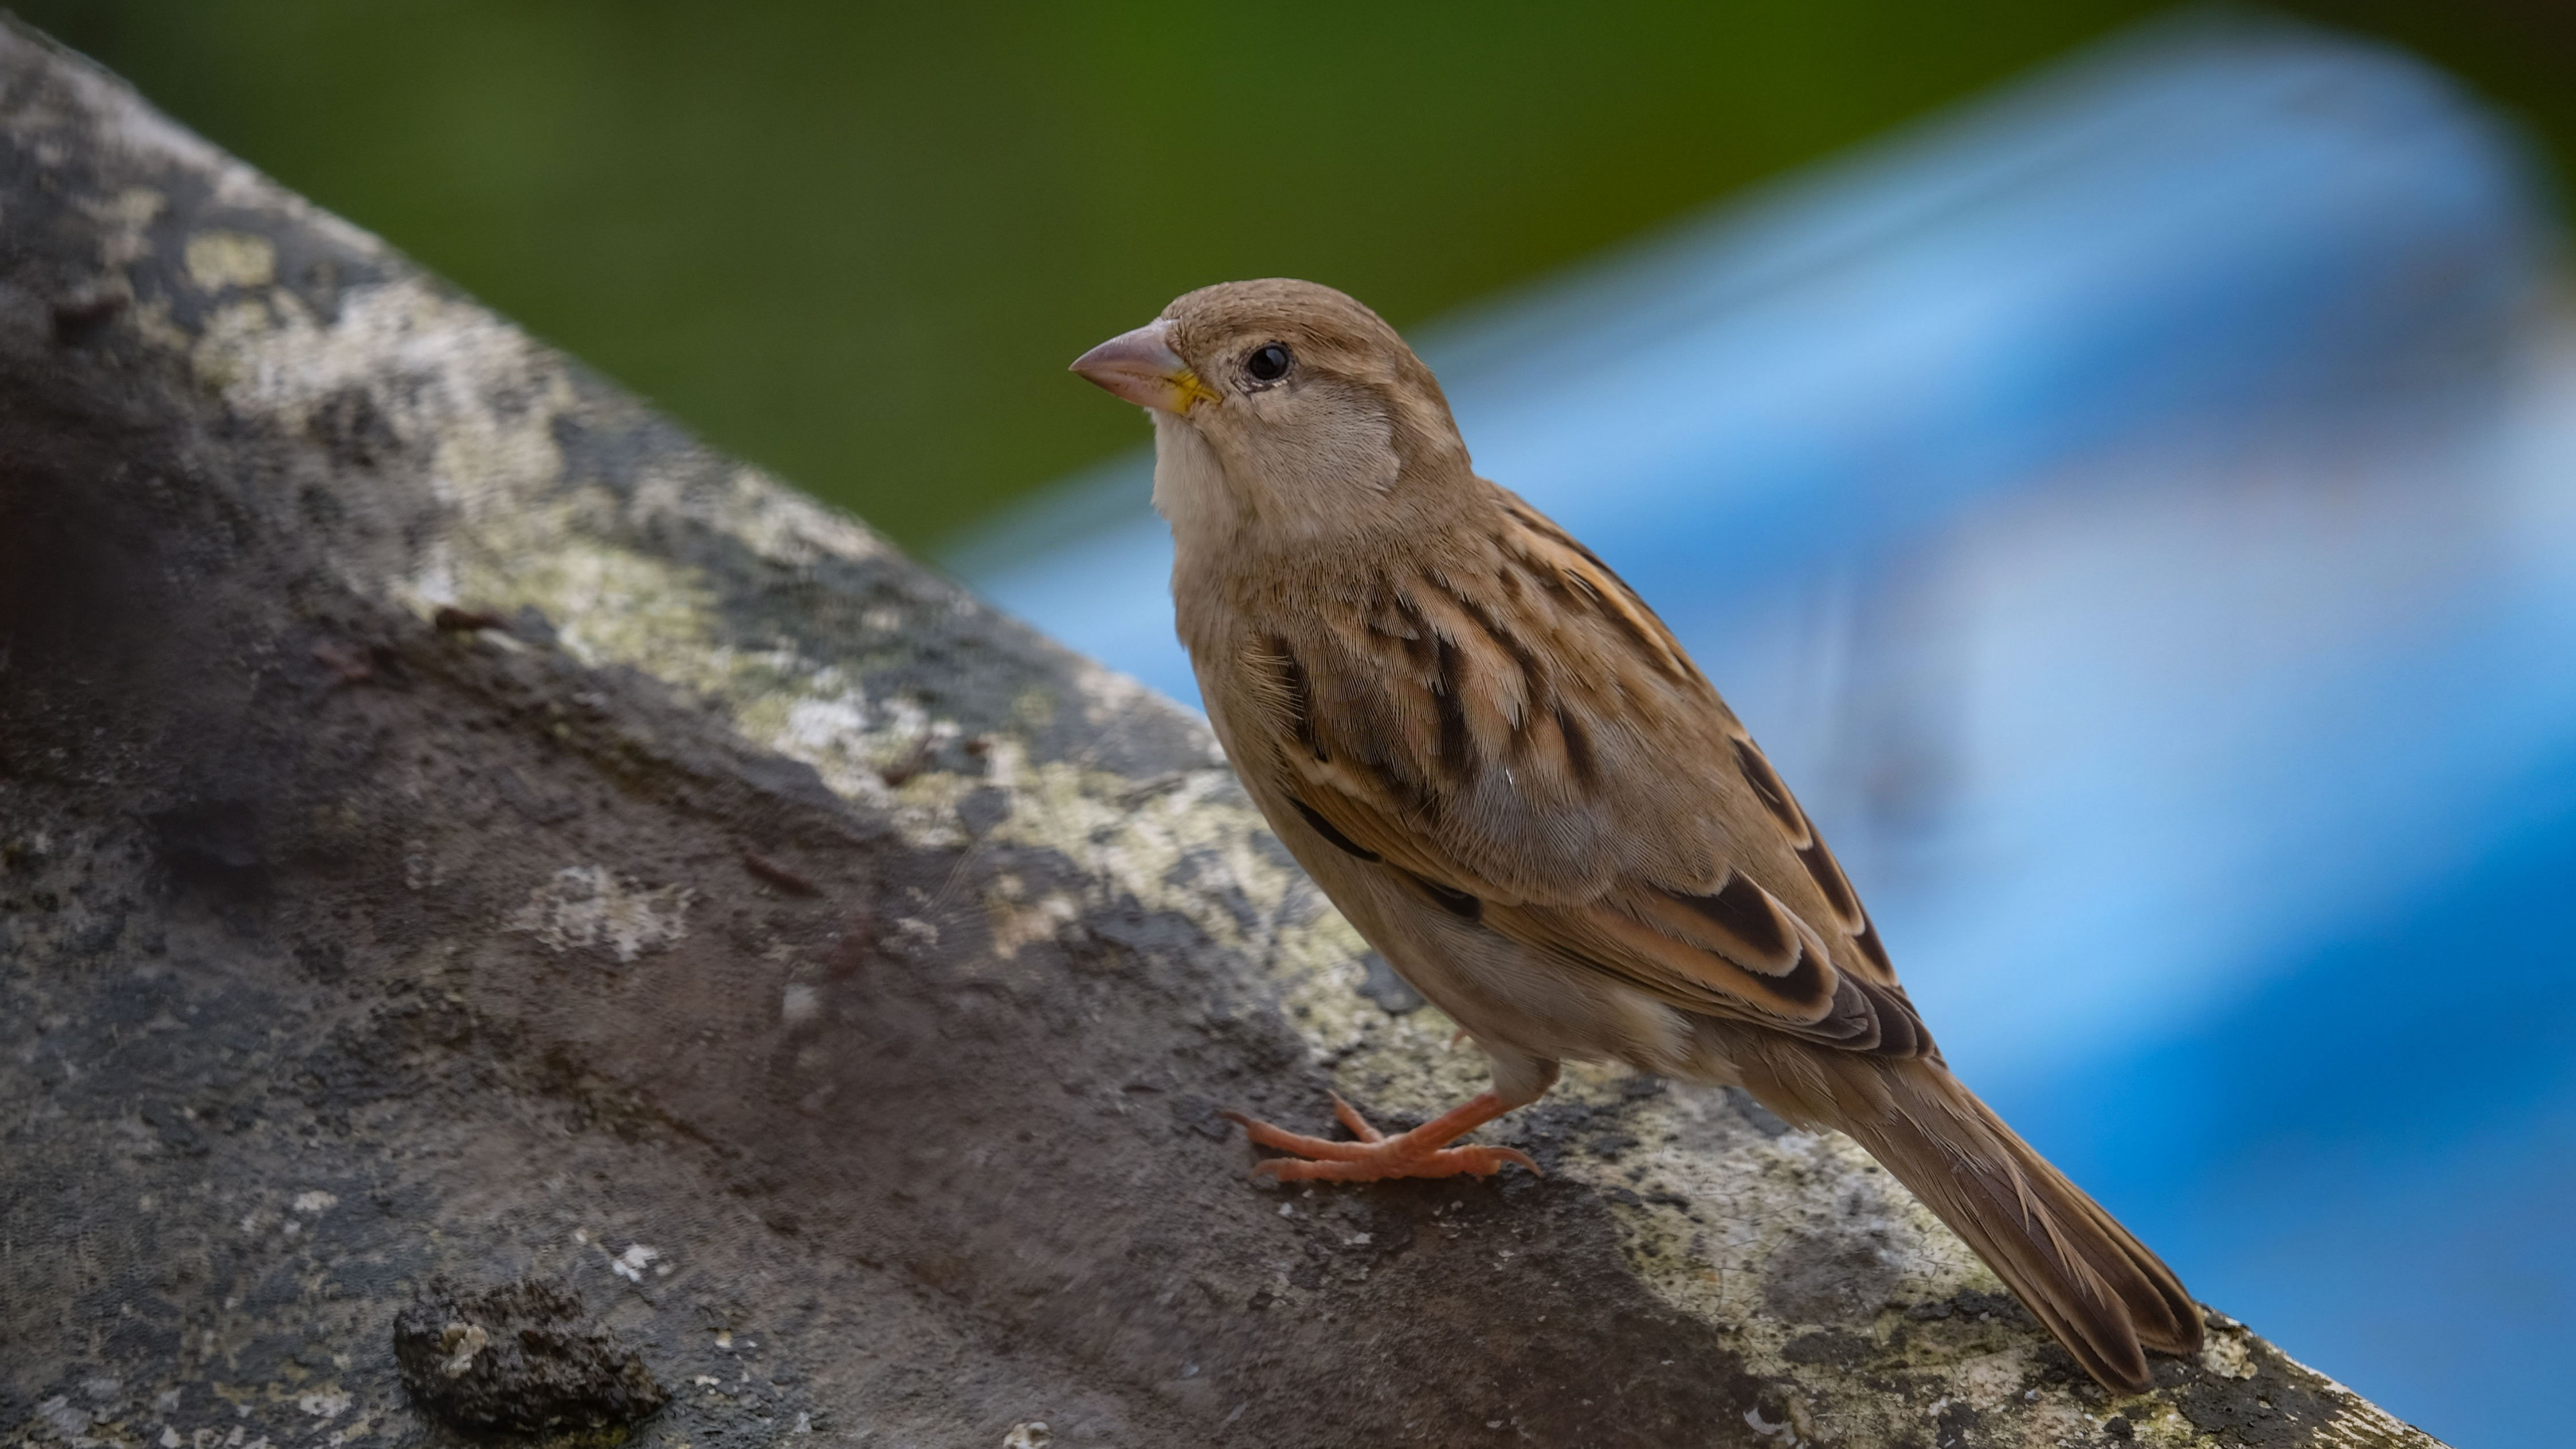 Sparrow wallpaper, High-resolution avian image, Widescreen bird background, Vibrant bird photography, 3840x2160 4K Desktop